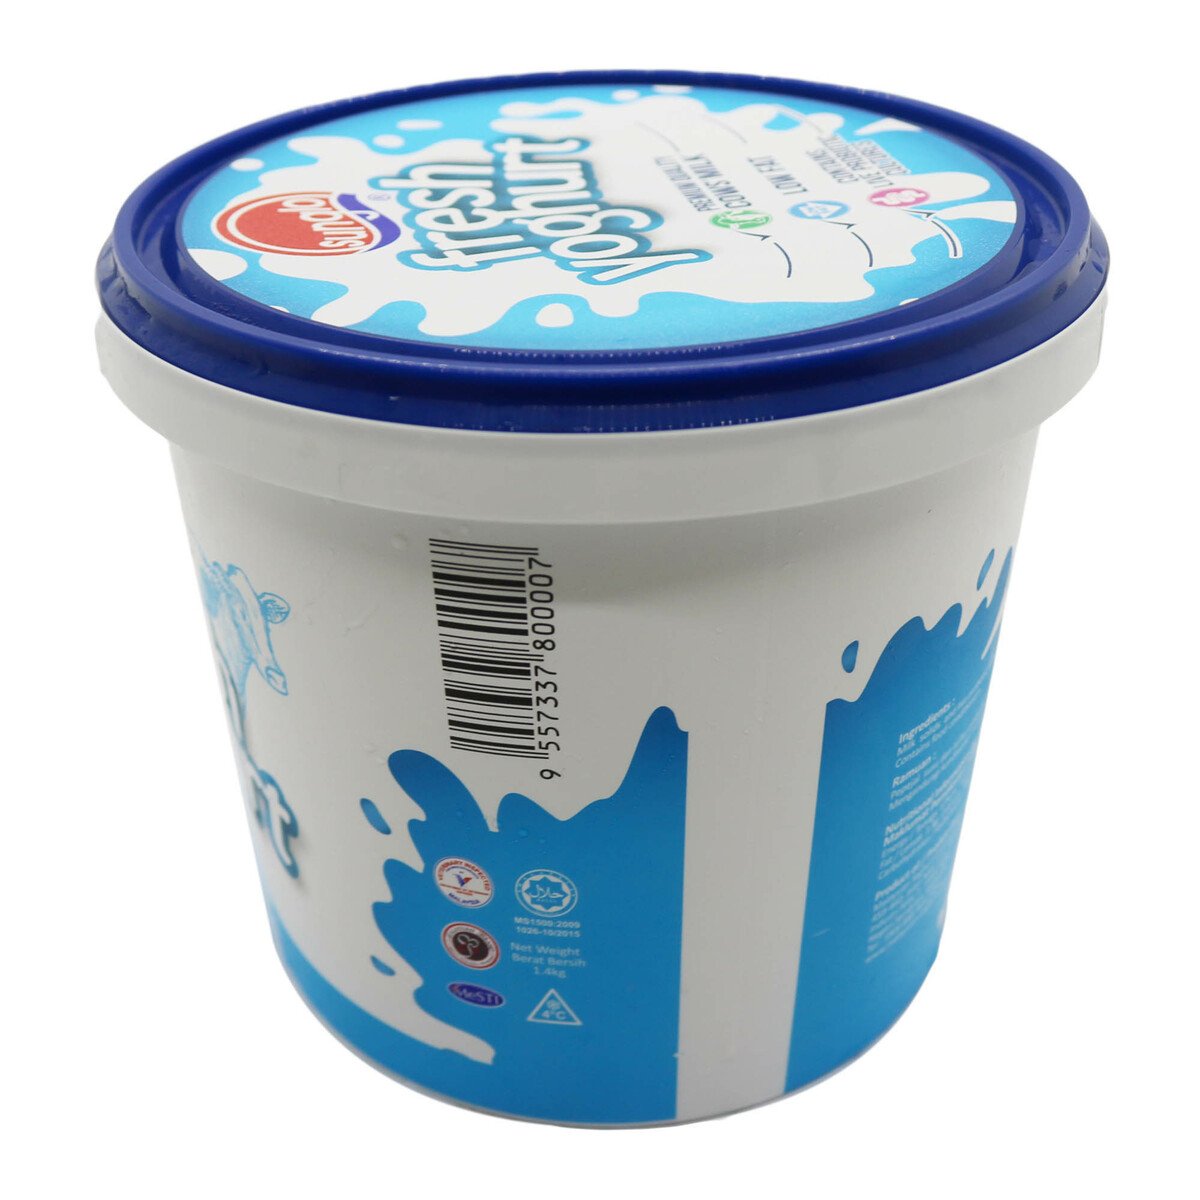 Sunglo Fresh Yoghurt 1.4kg